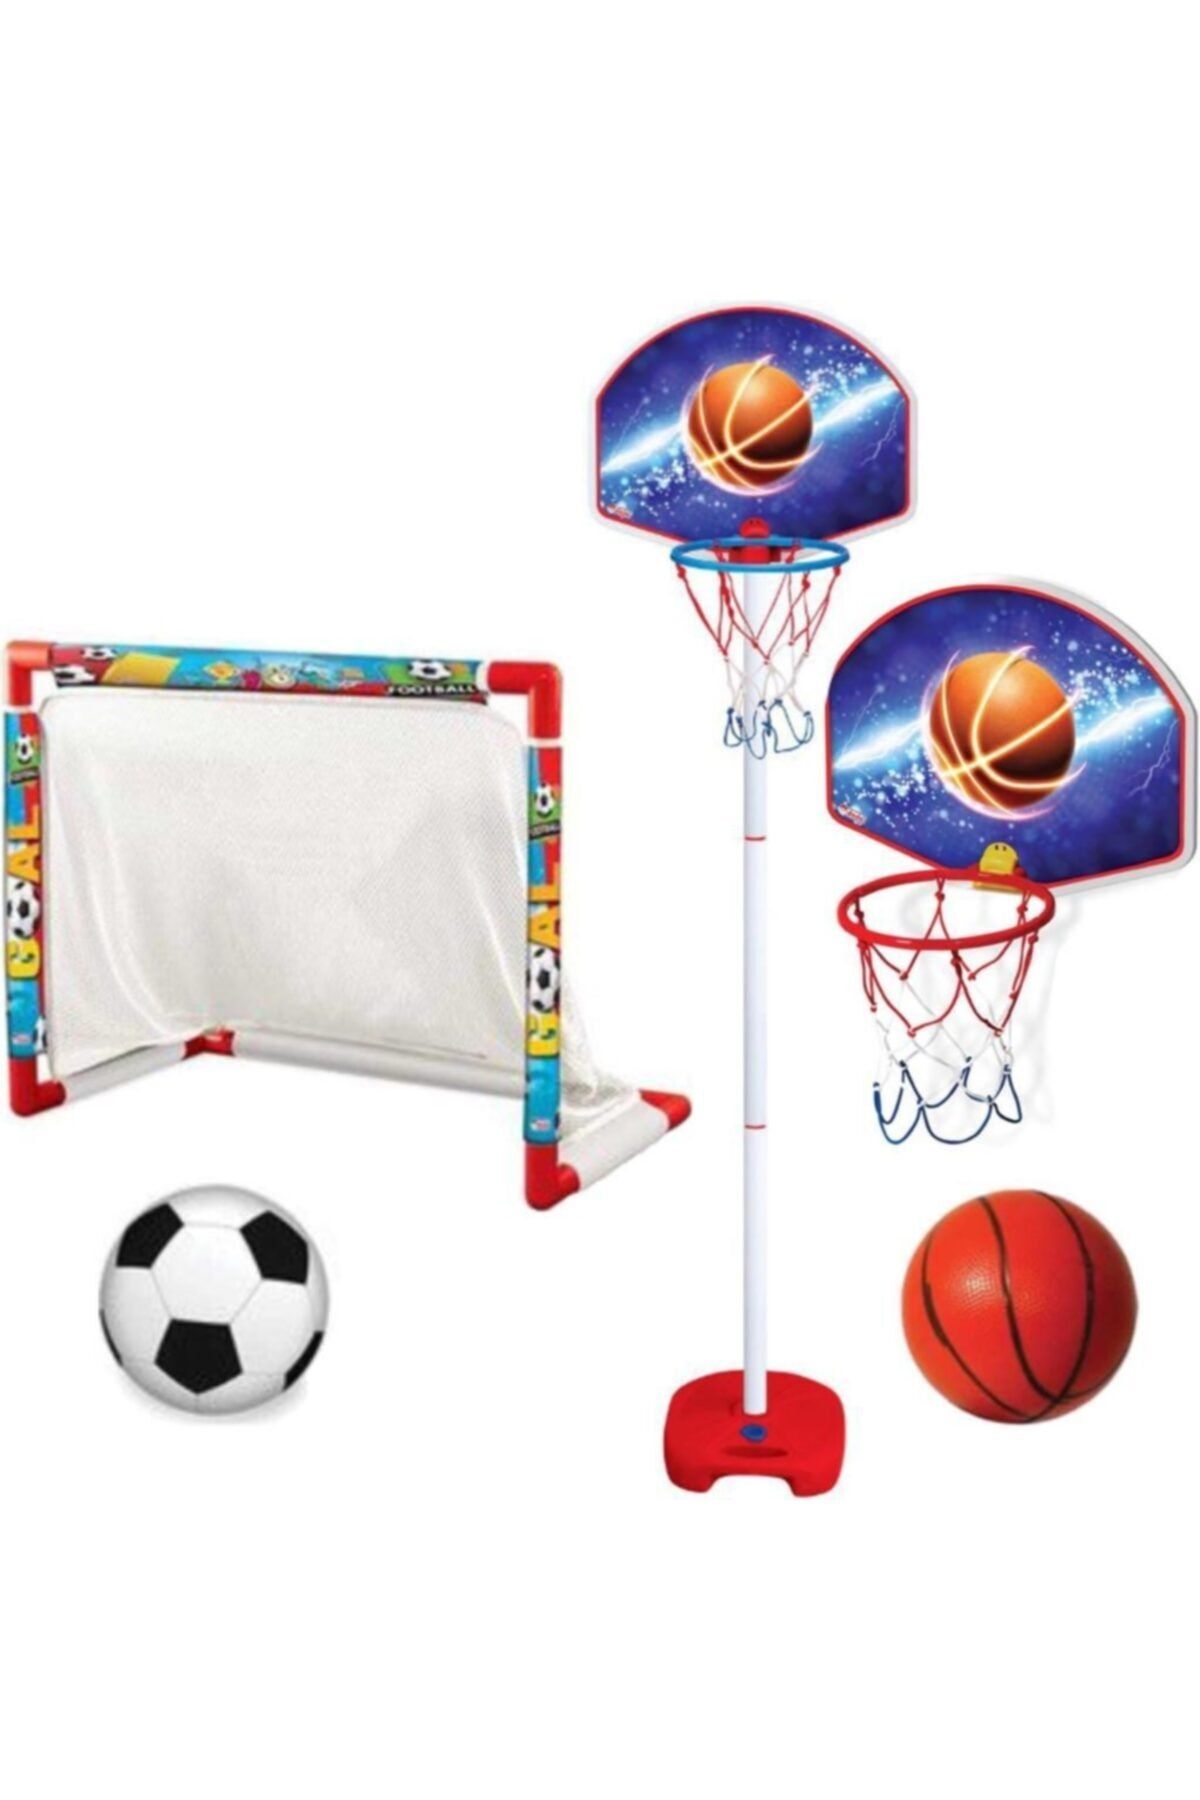 DEDE Futbol Kalesi + Ayaklı Basketbol Potası- Erkek Çocuk Oyuncakları - Oyuncak Çocuk Spor Oyuncakları